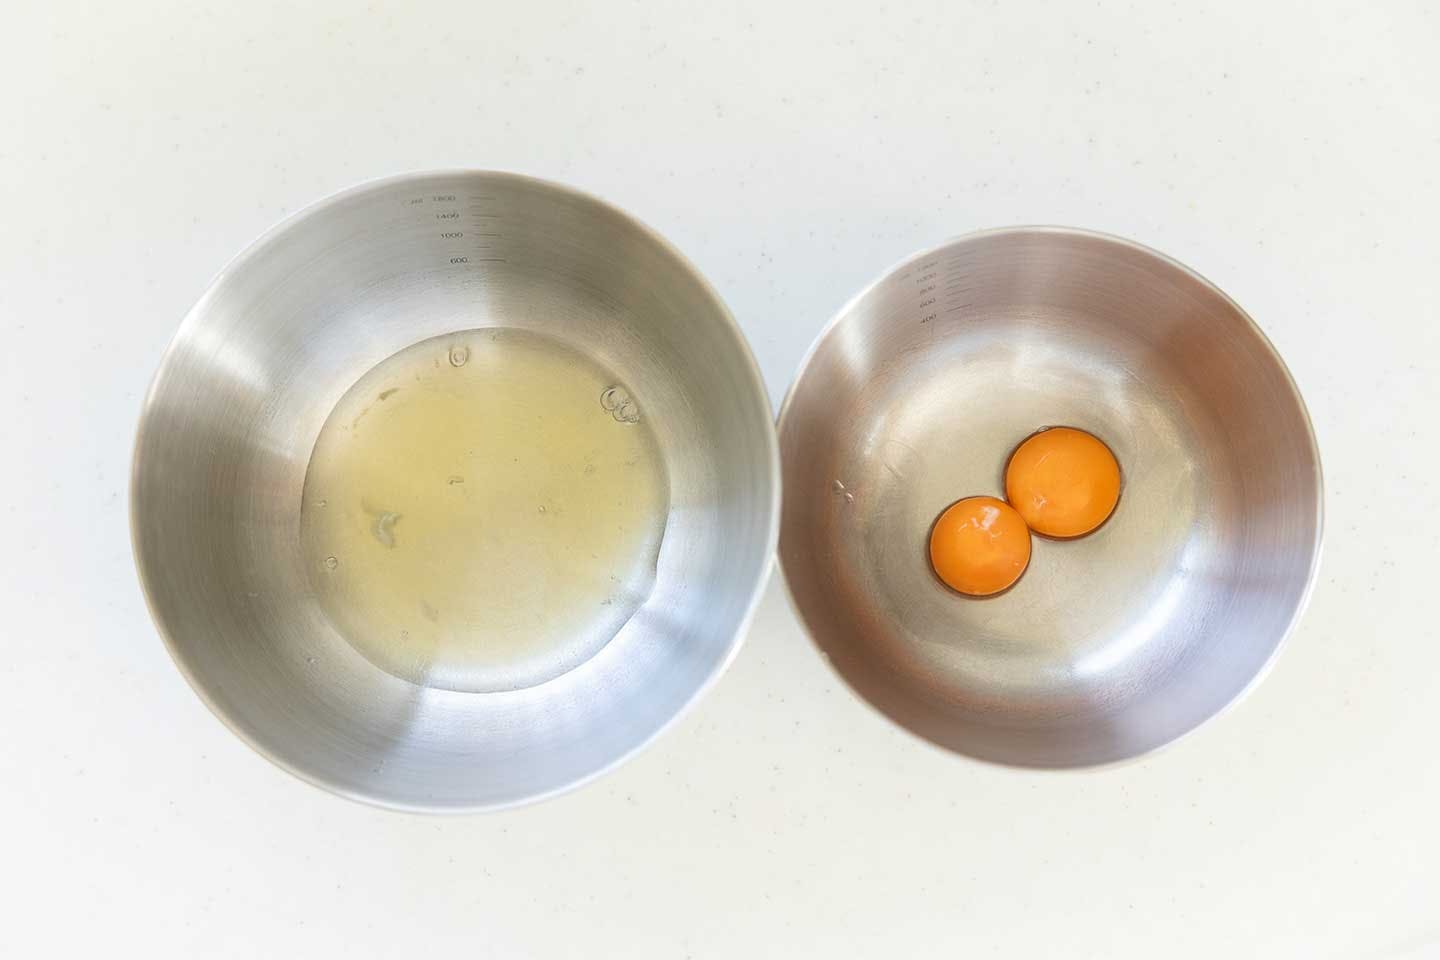 パウンドケーキを作る。卵は卵白と卵黄に分けてボウルに入れる